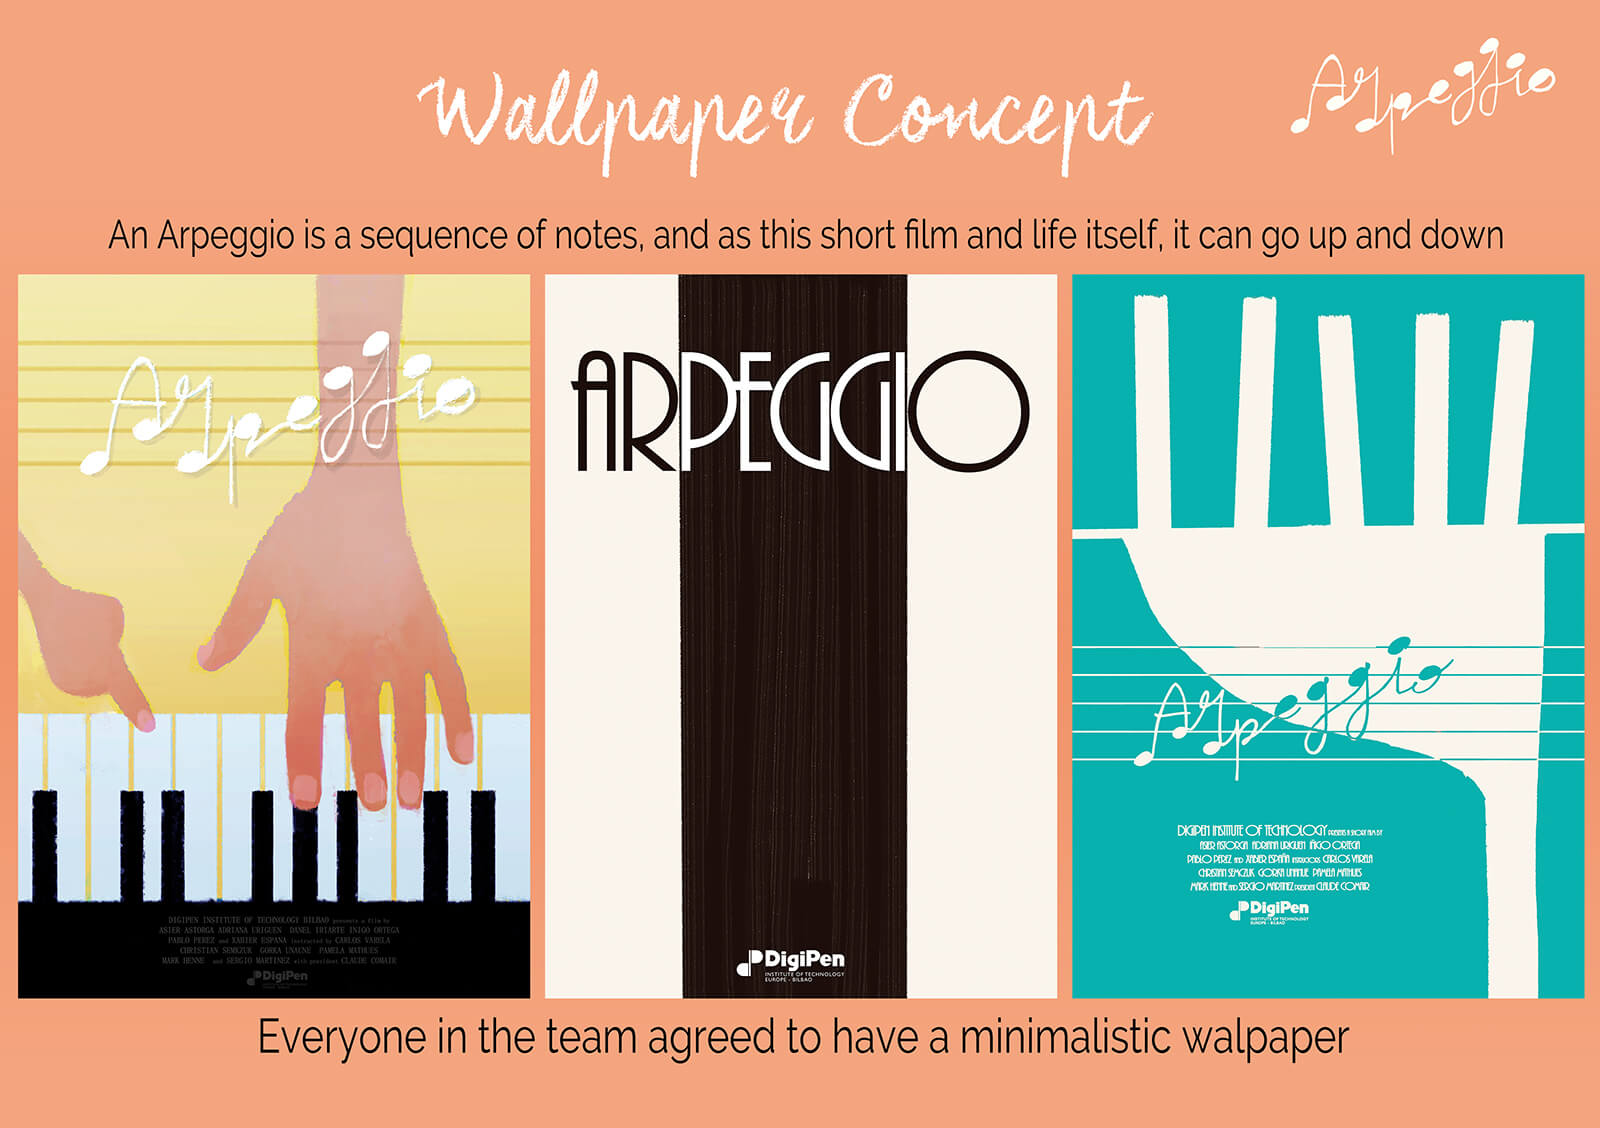 Diseños para pósters promocionales del corotmetraje Arpeggio, con letras y diseños estilizados como notas musicales y teclas de piano.